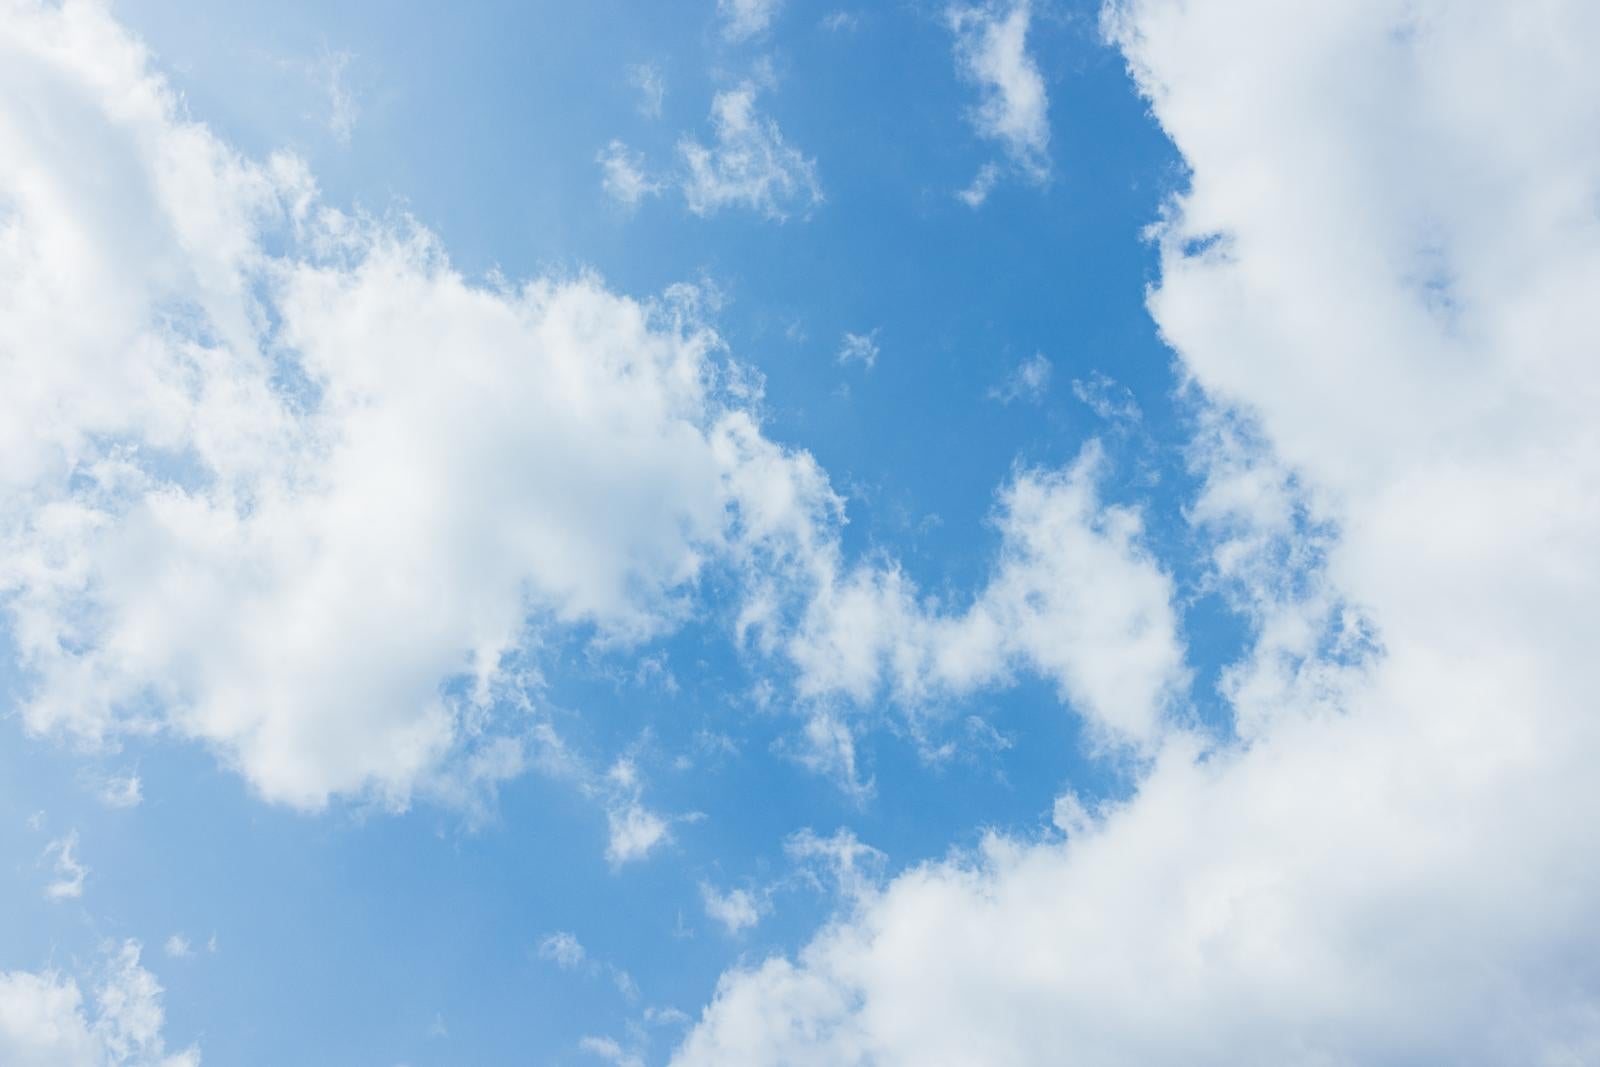 「清々しい青空と雲」の写真